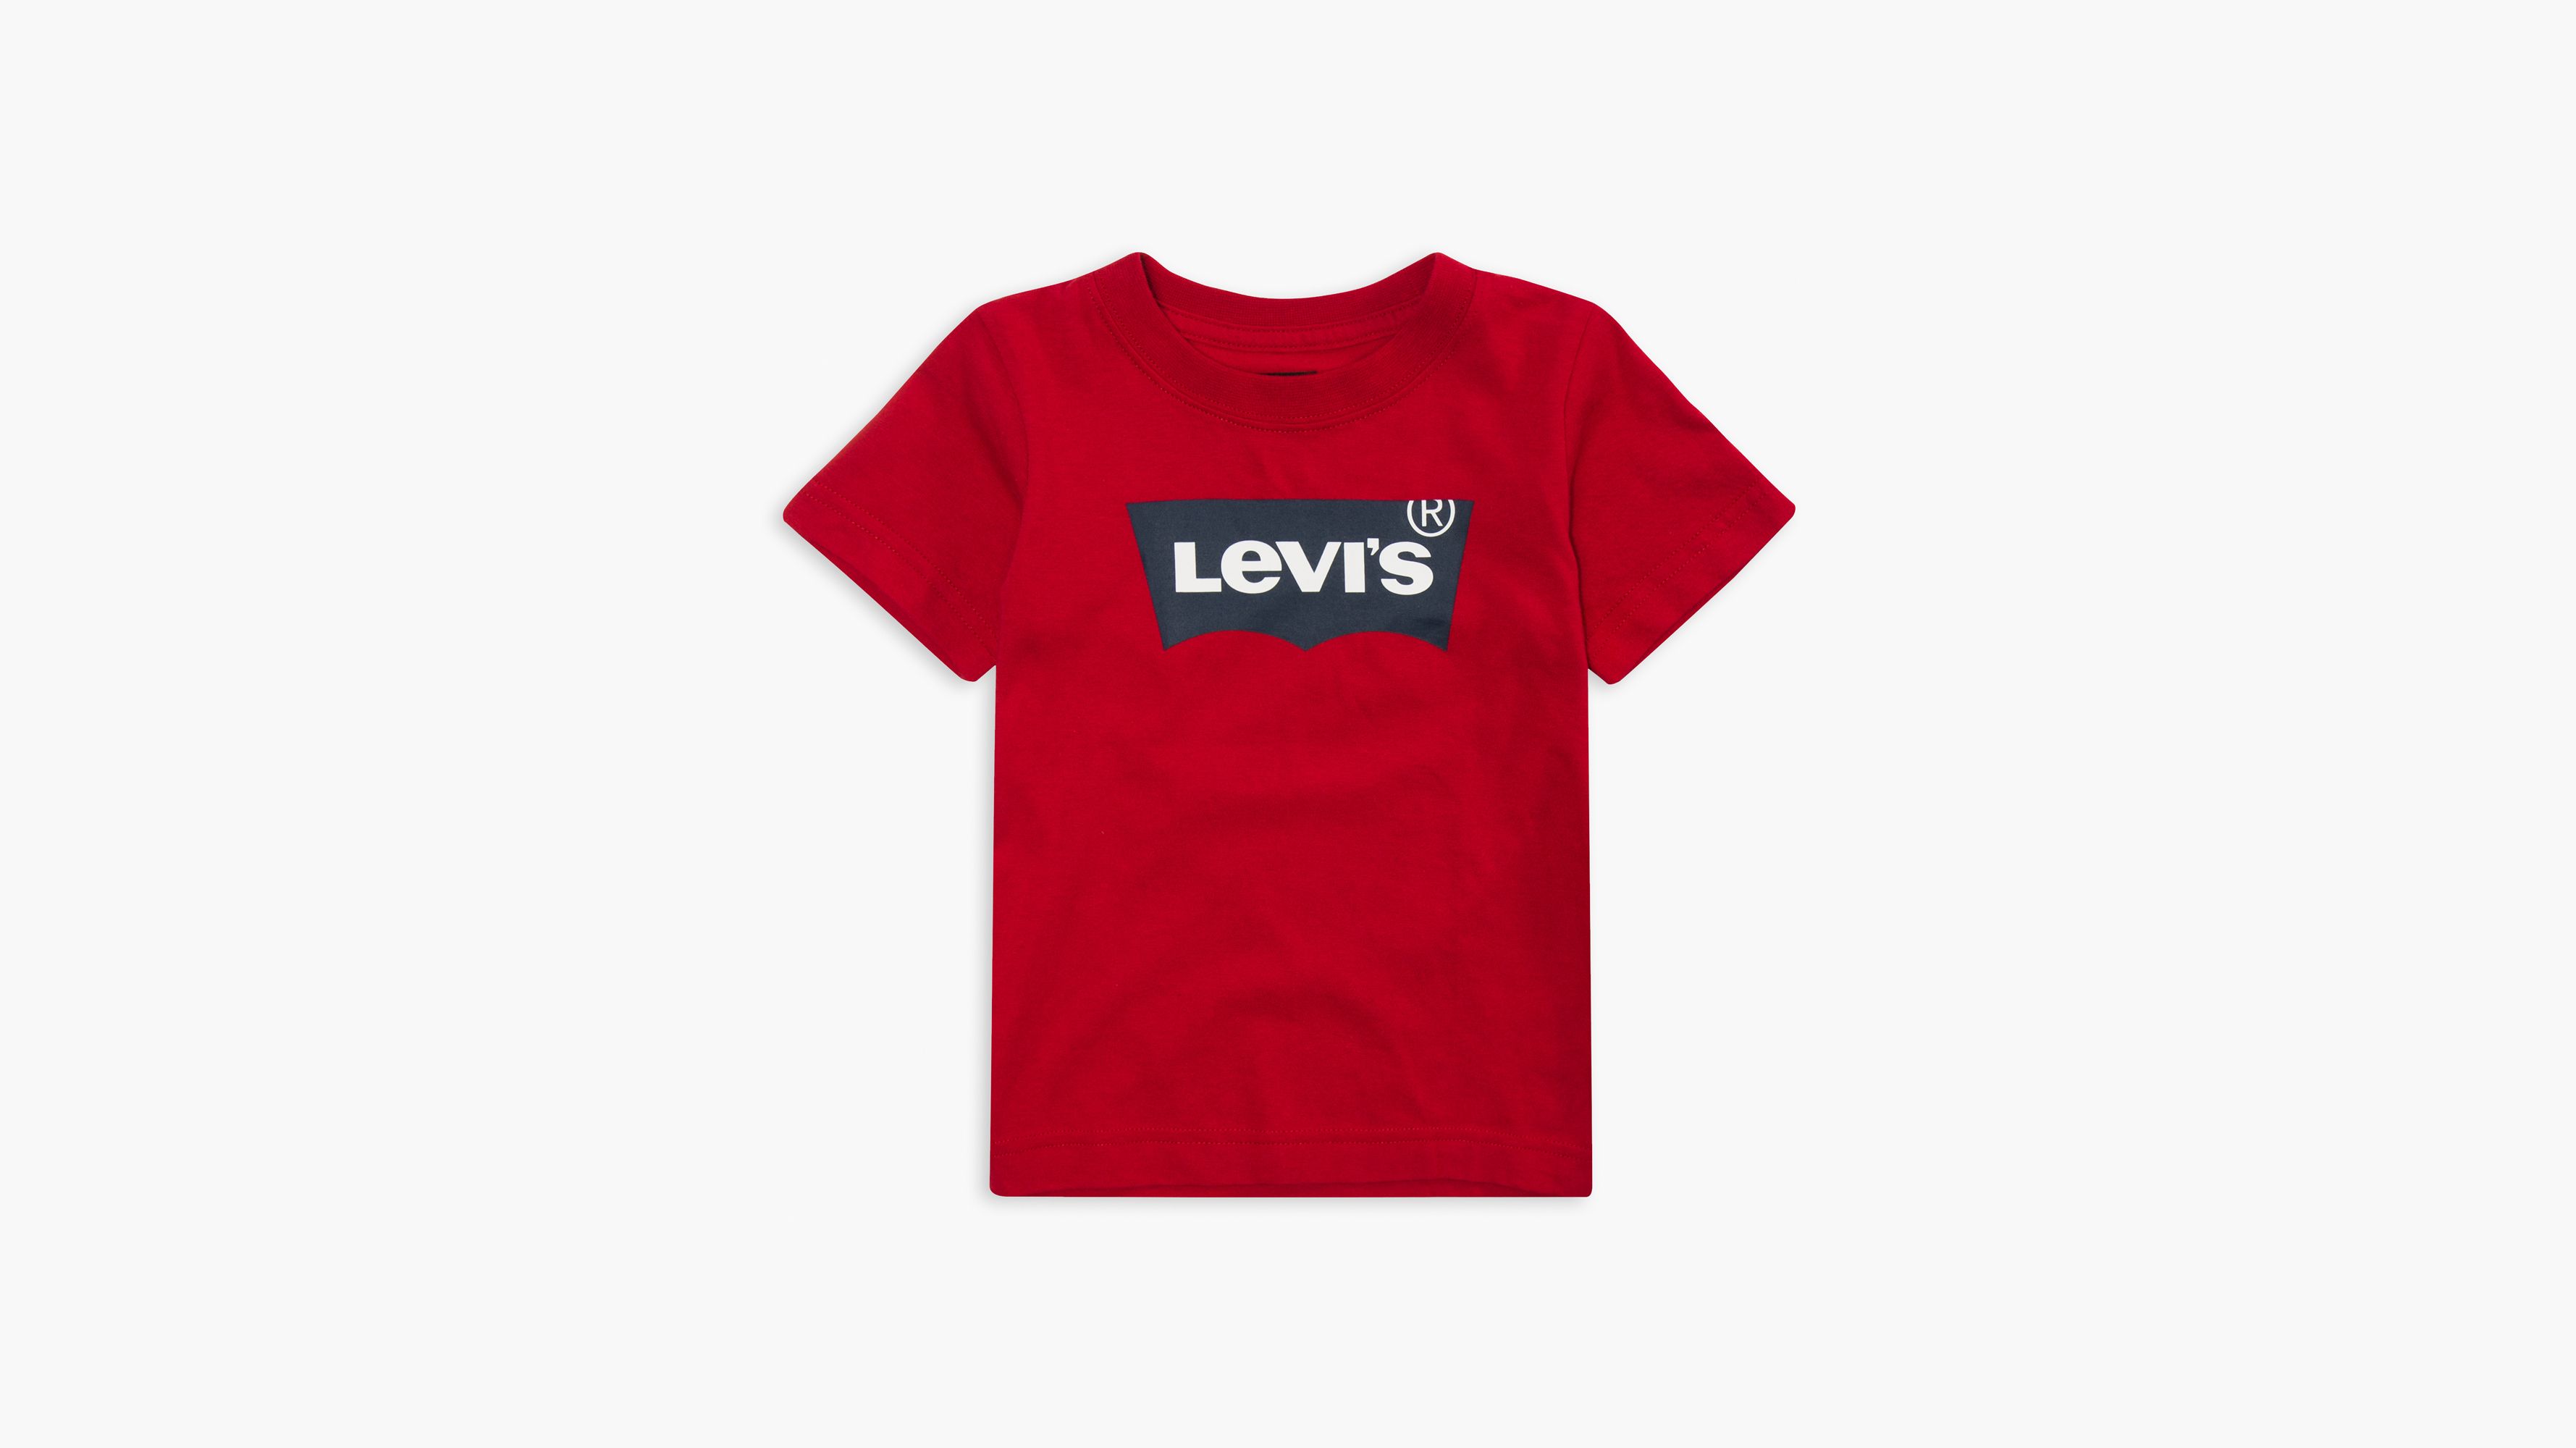 levis tshirt for boys